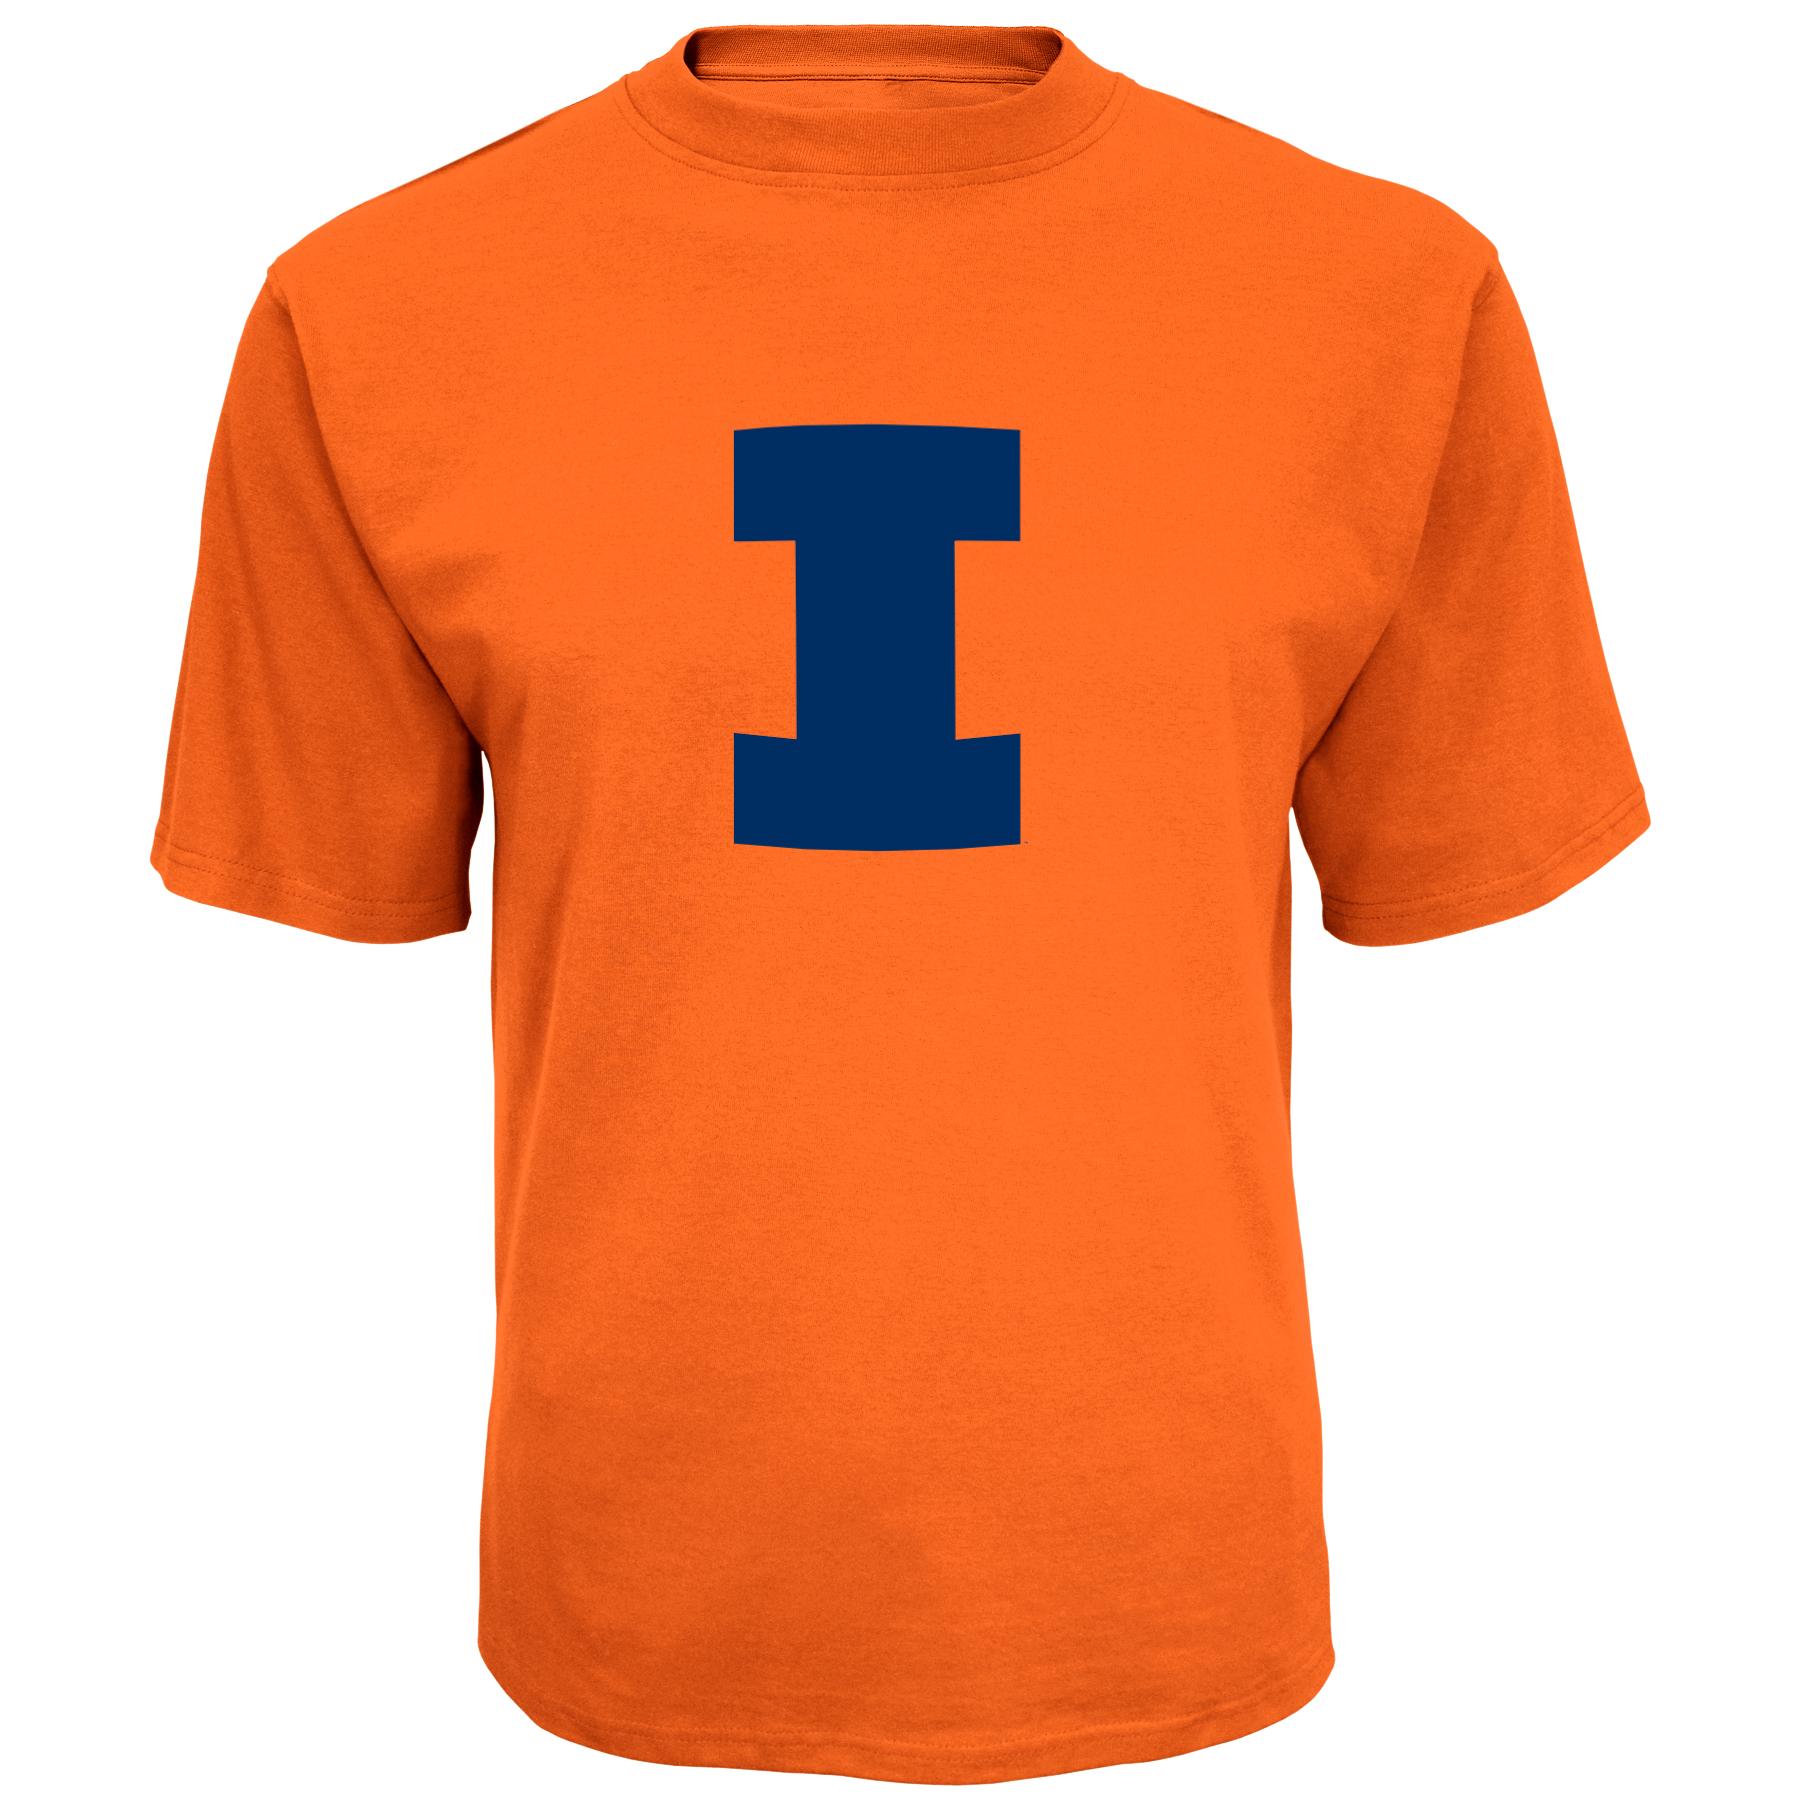 NCAA Men's Graphic T-Shirt - Illinois Fighting Illini